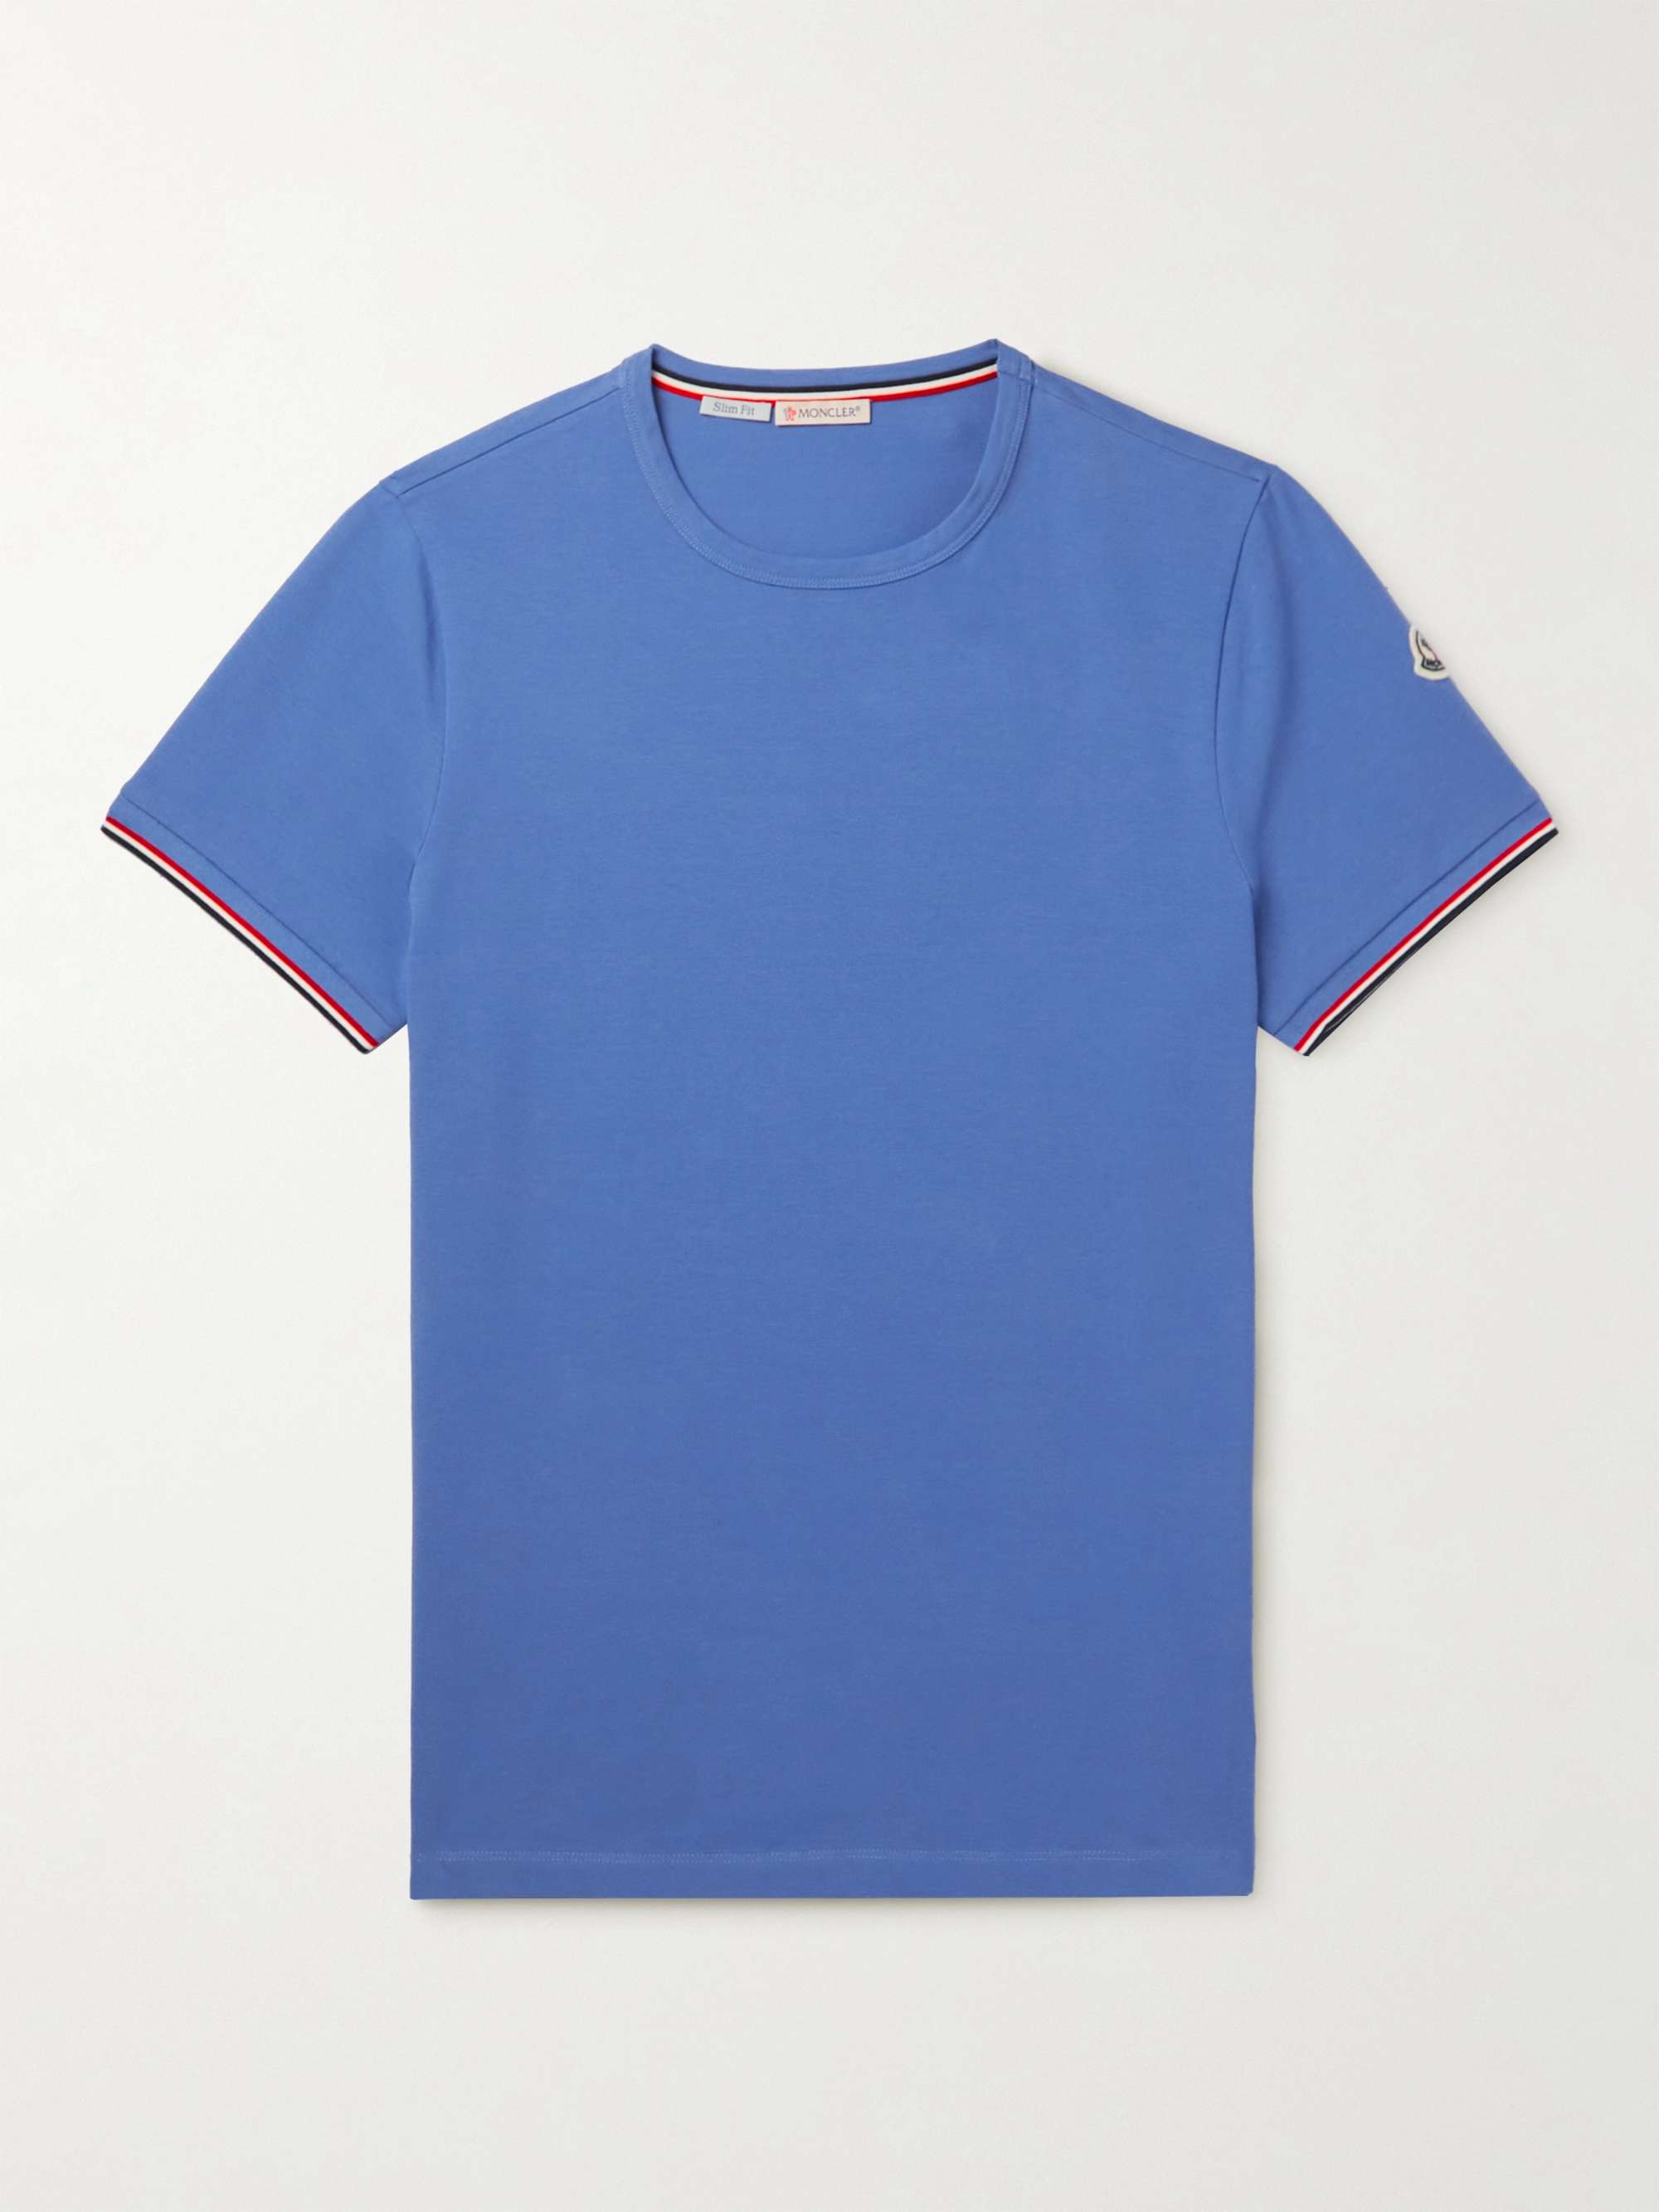 Облегающая футболка из эластичного хлопкового джерси с аппликацией логотипа MONCLER, синий толстовка из хлопкового джерси с аппликацией логотипа moncler черный